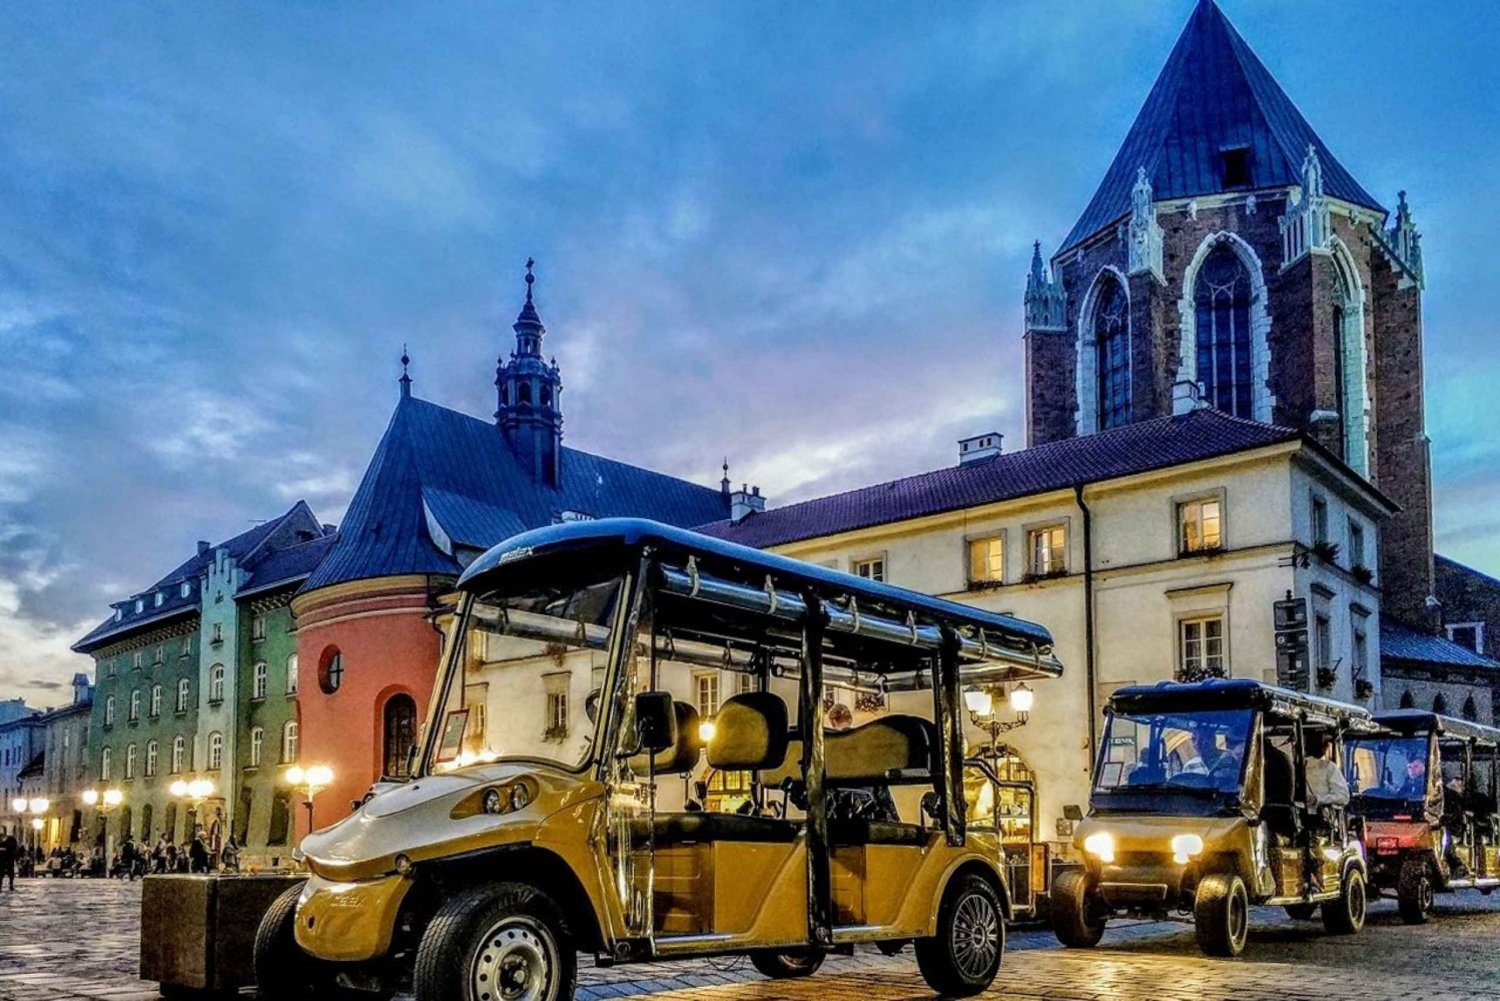 Cracovia: Tour in golf cart della Città Vecchia, del Ghetto e di Kazimierz